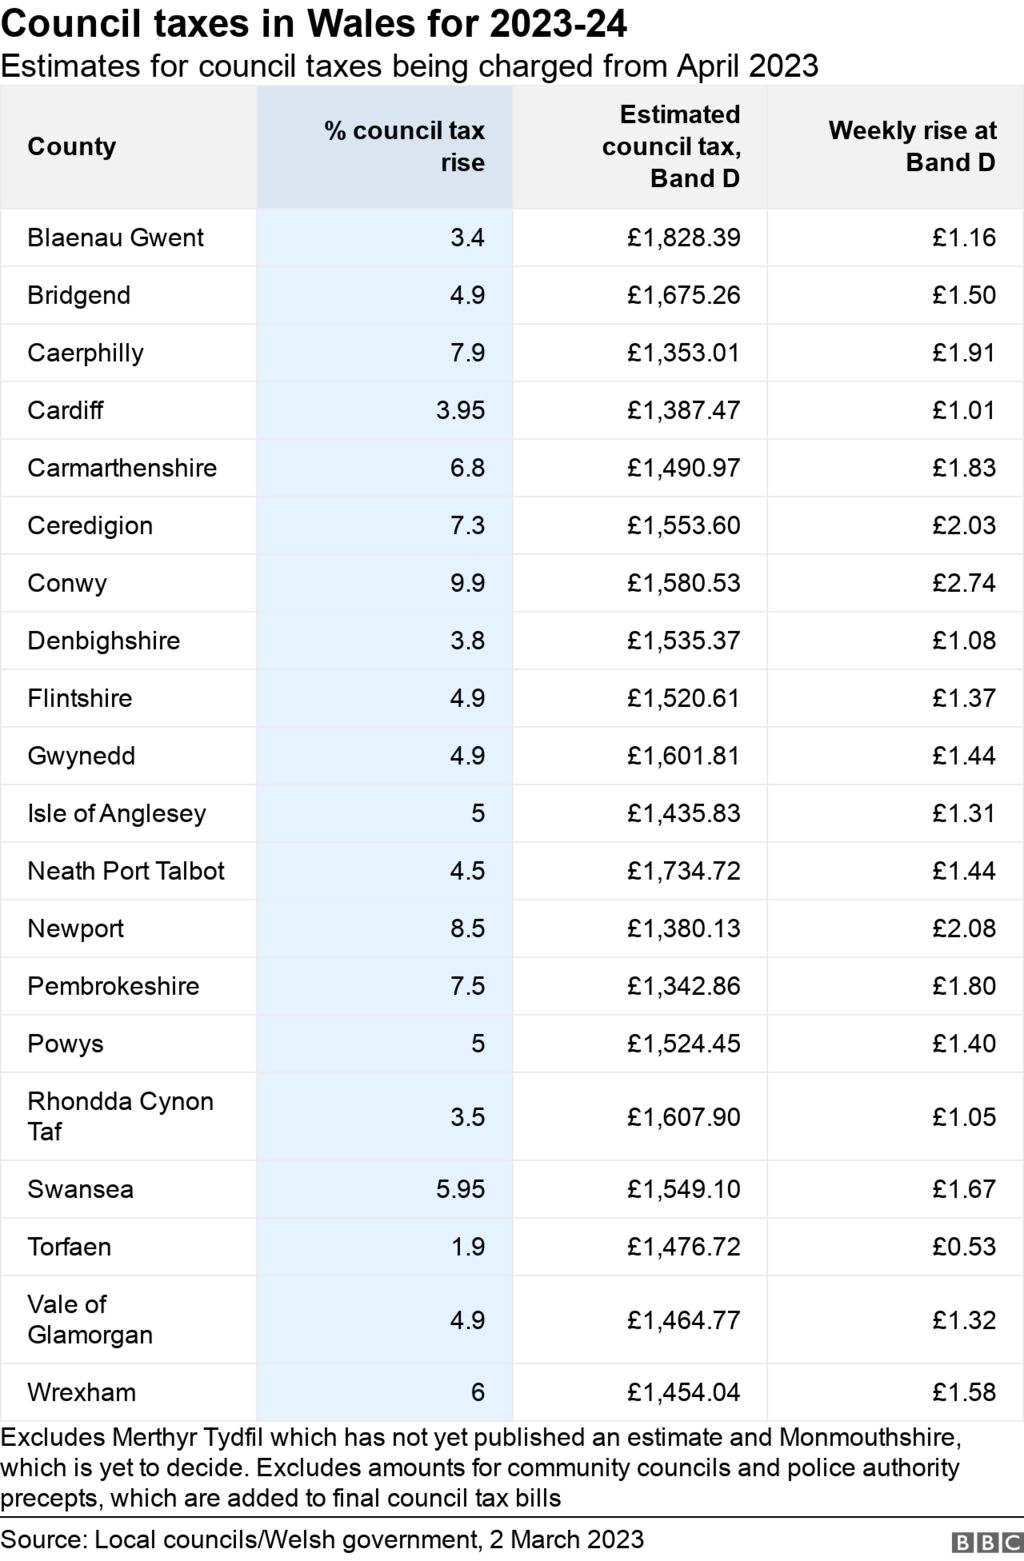 Chart showing council tax rise estimates